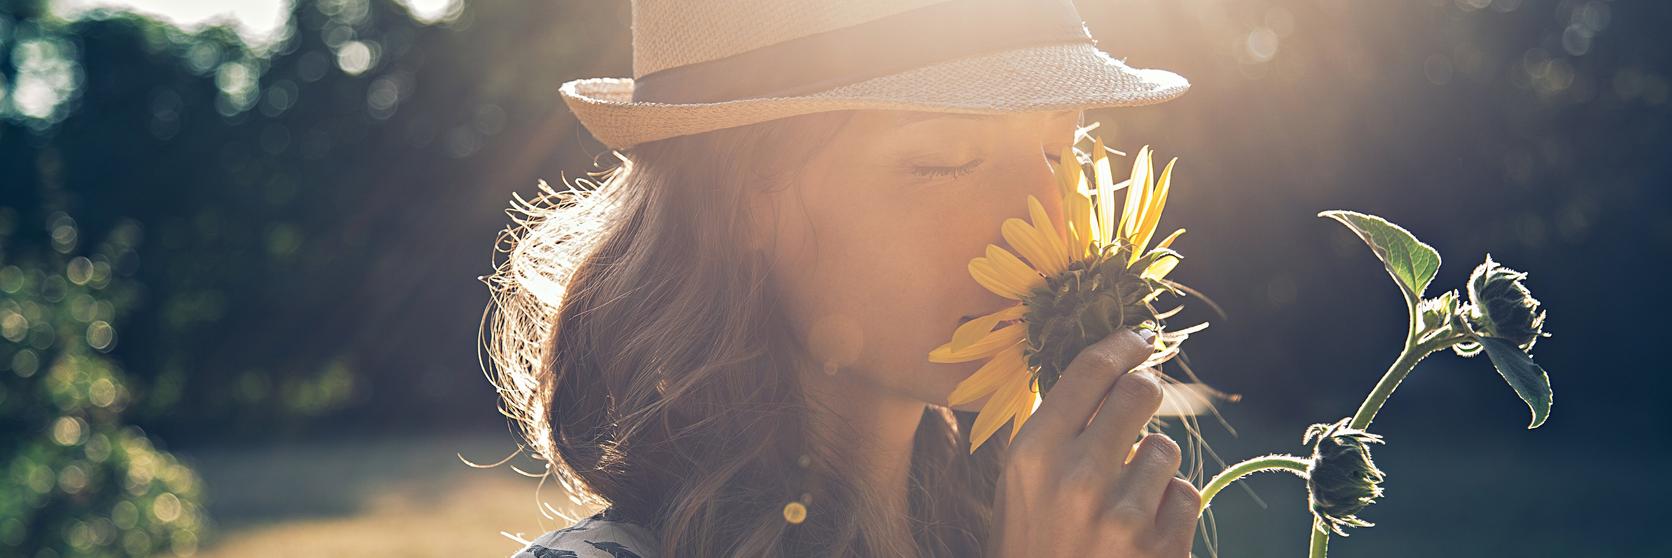 woman-sunflowers-smell-sun